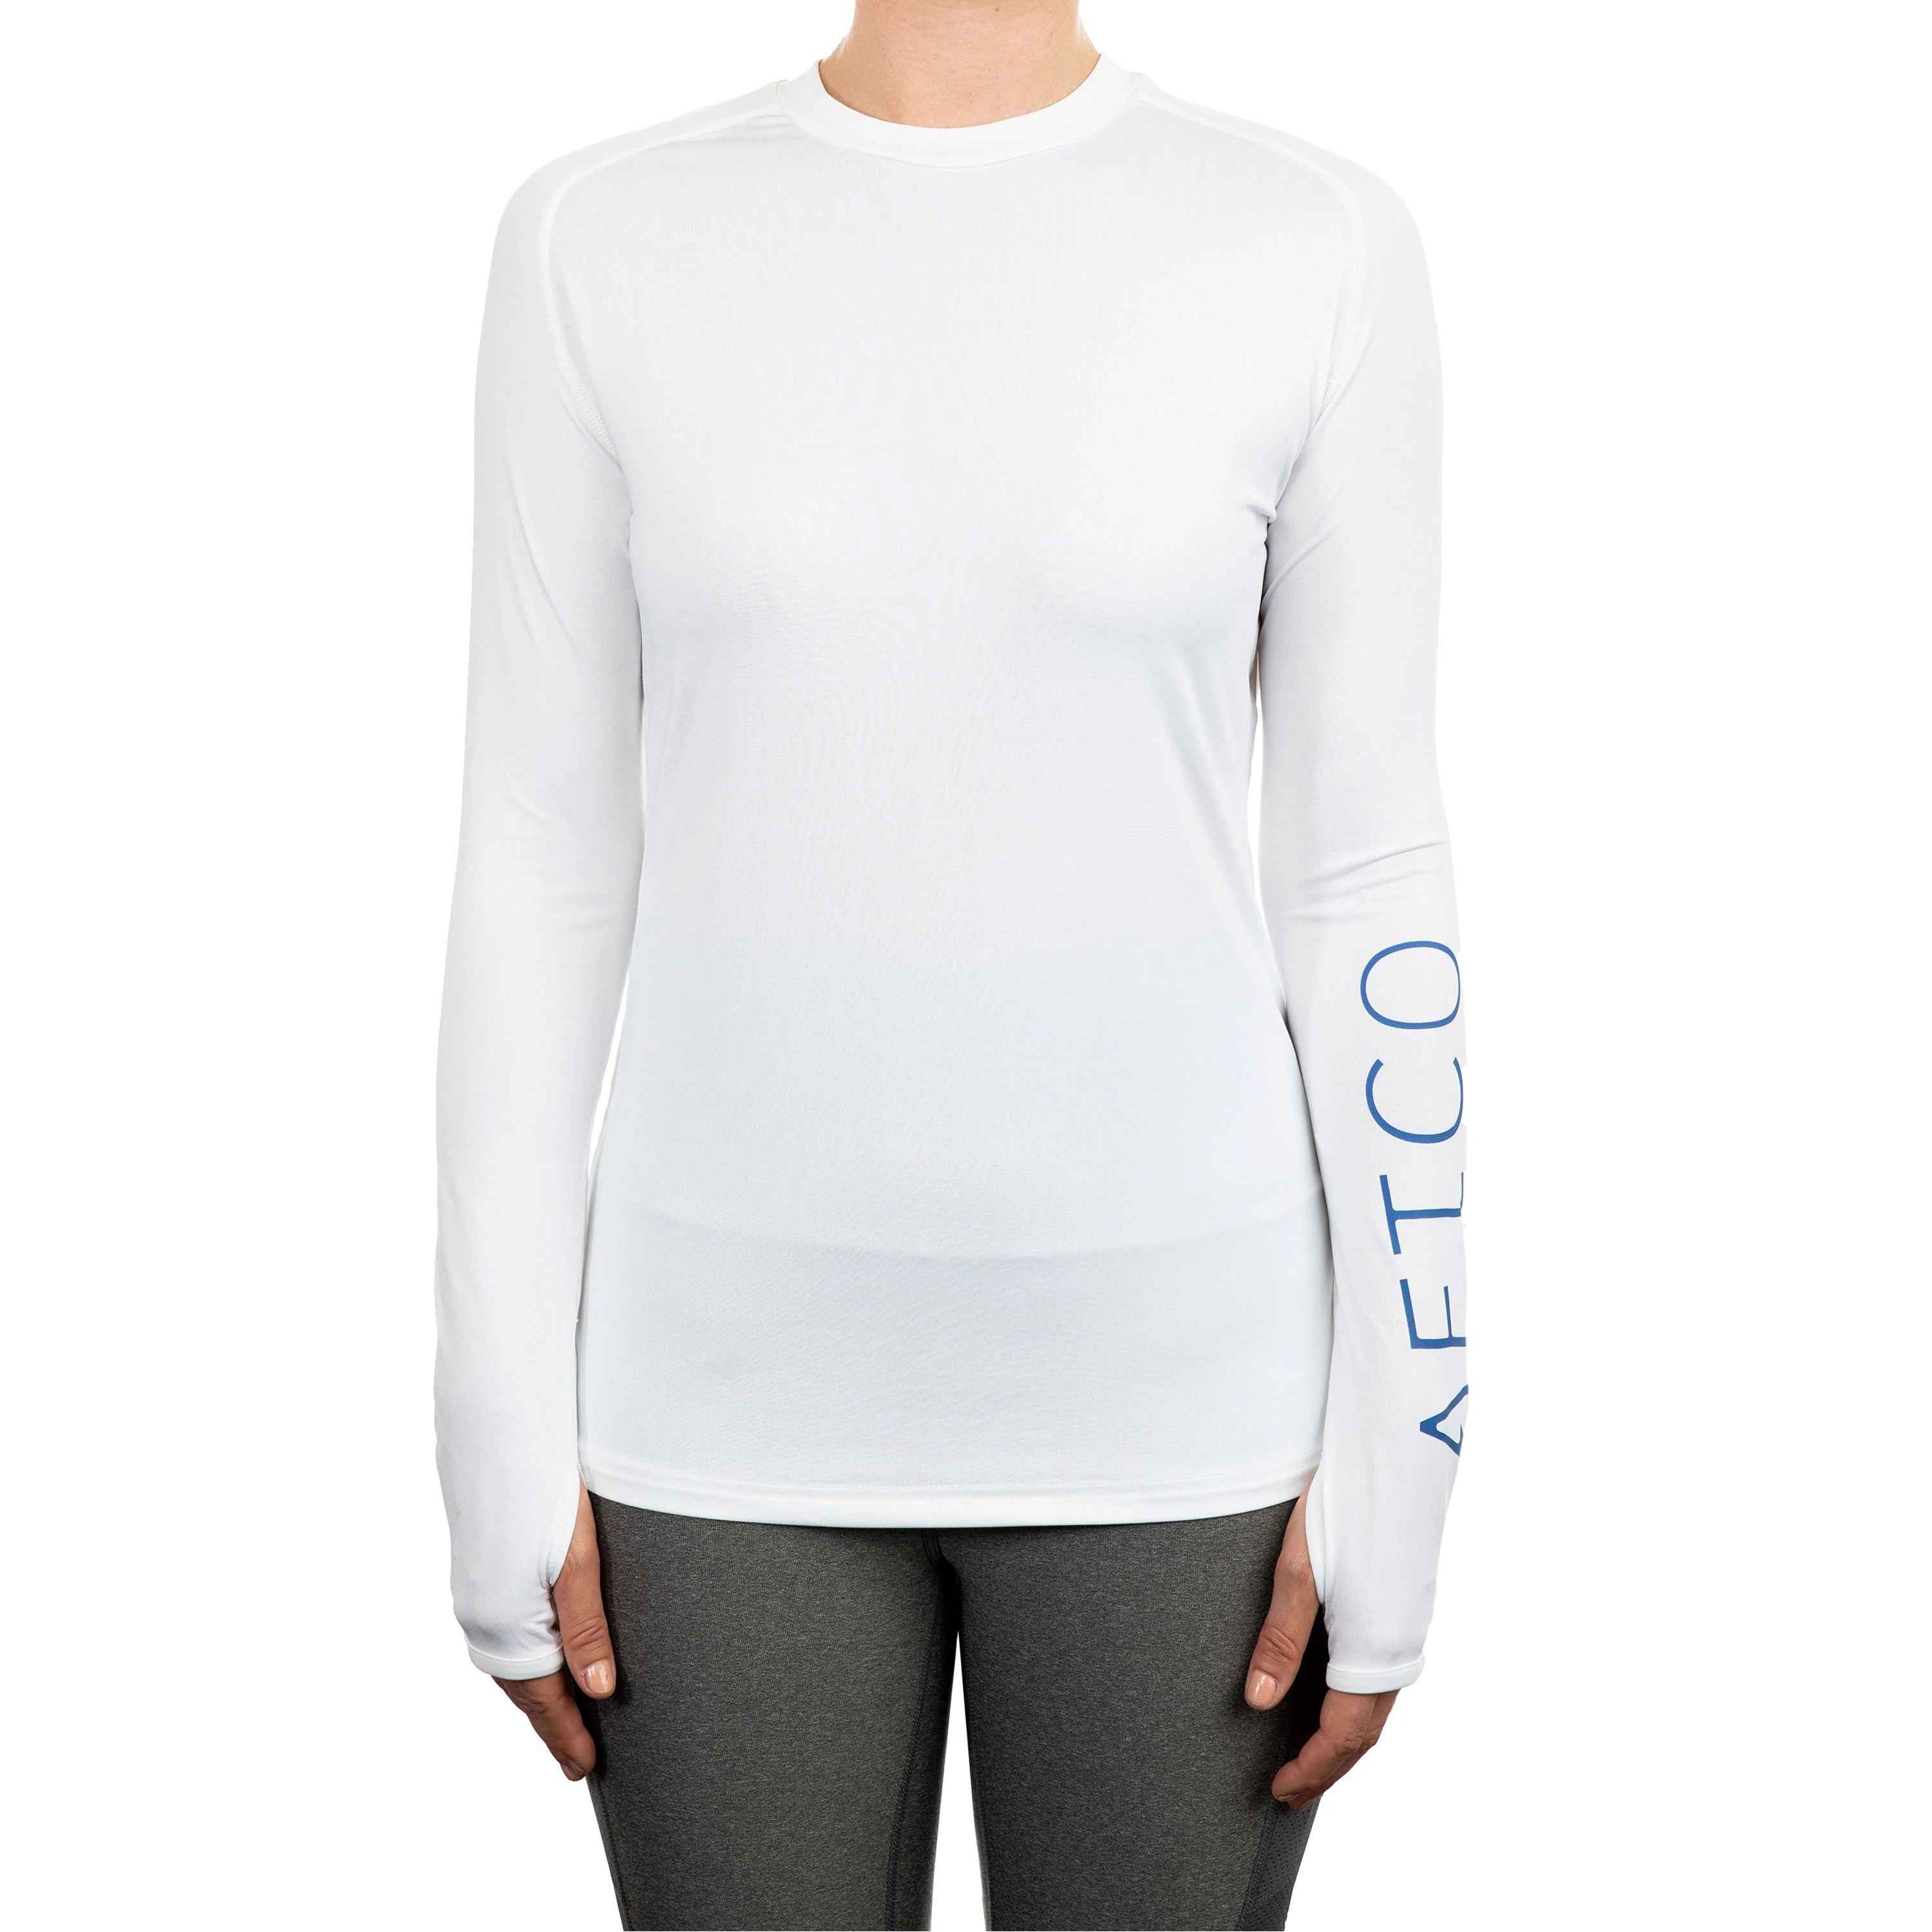 Hook & Heart Women's Long Sleeve UV Shirt, White